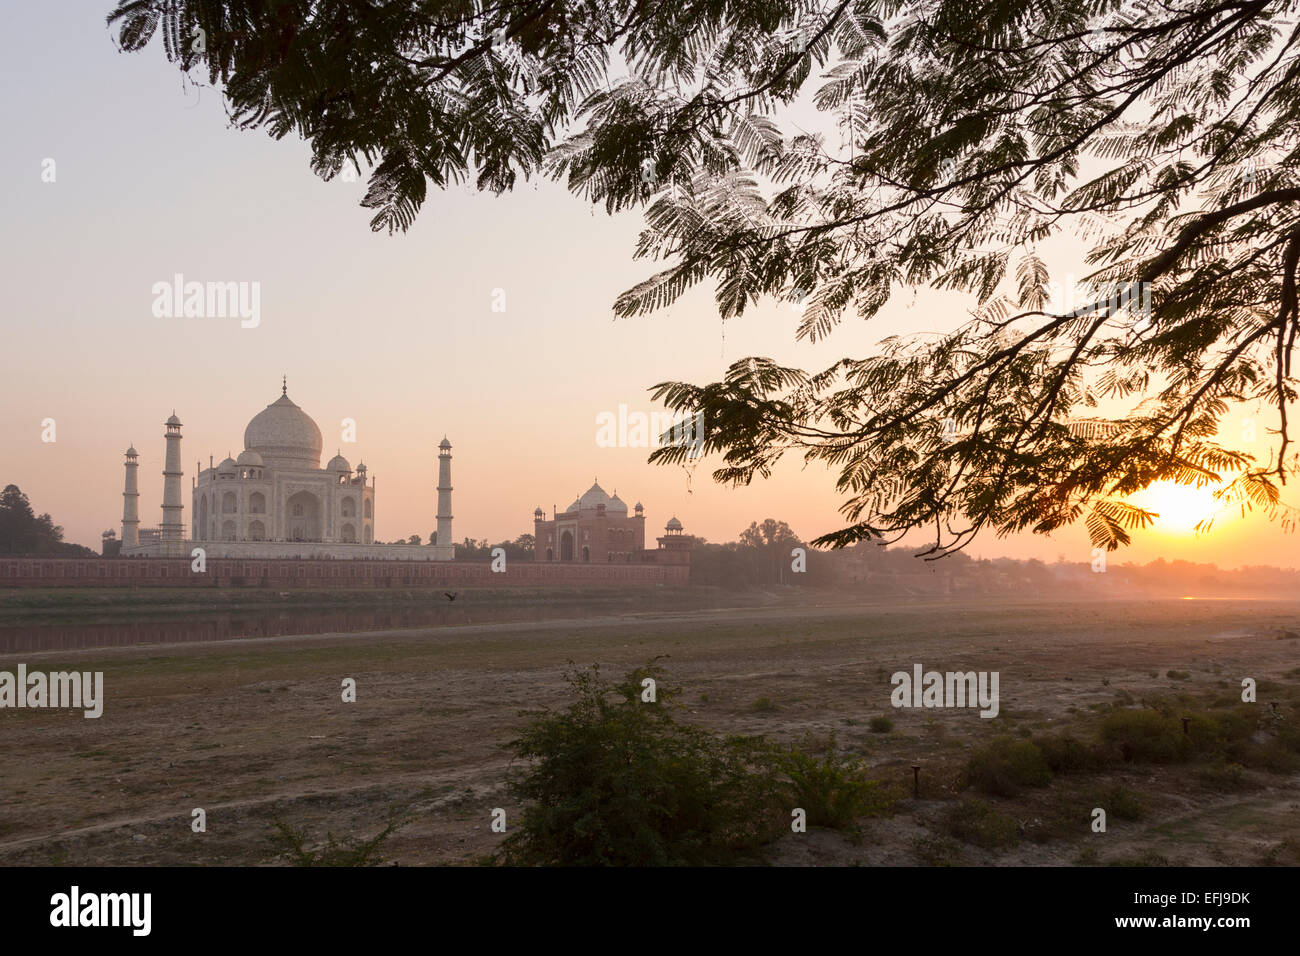 La India, Uttar Pradesh, Agra, Taj Mahal al atardecer Foto de stock